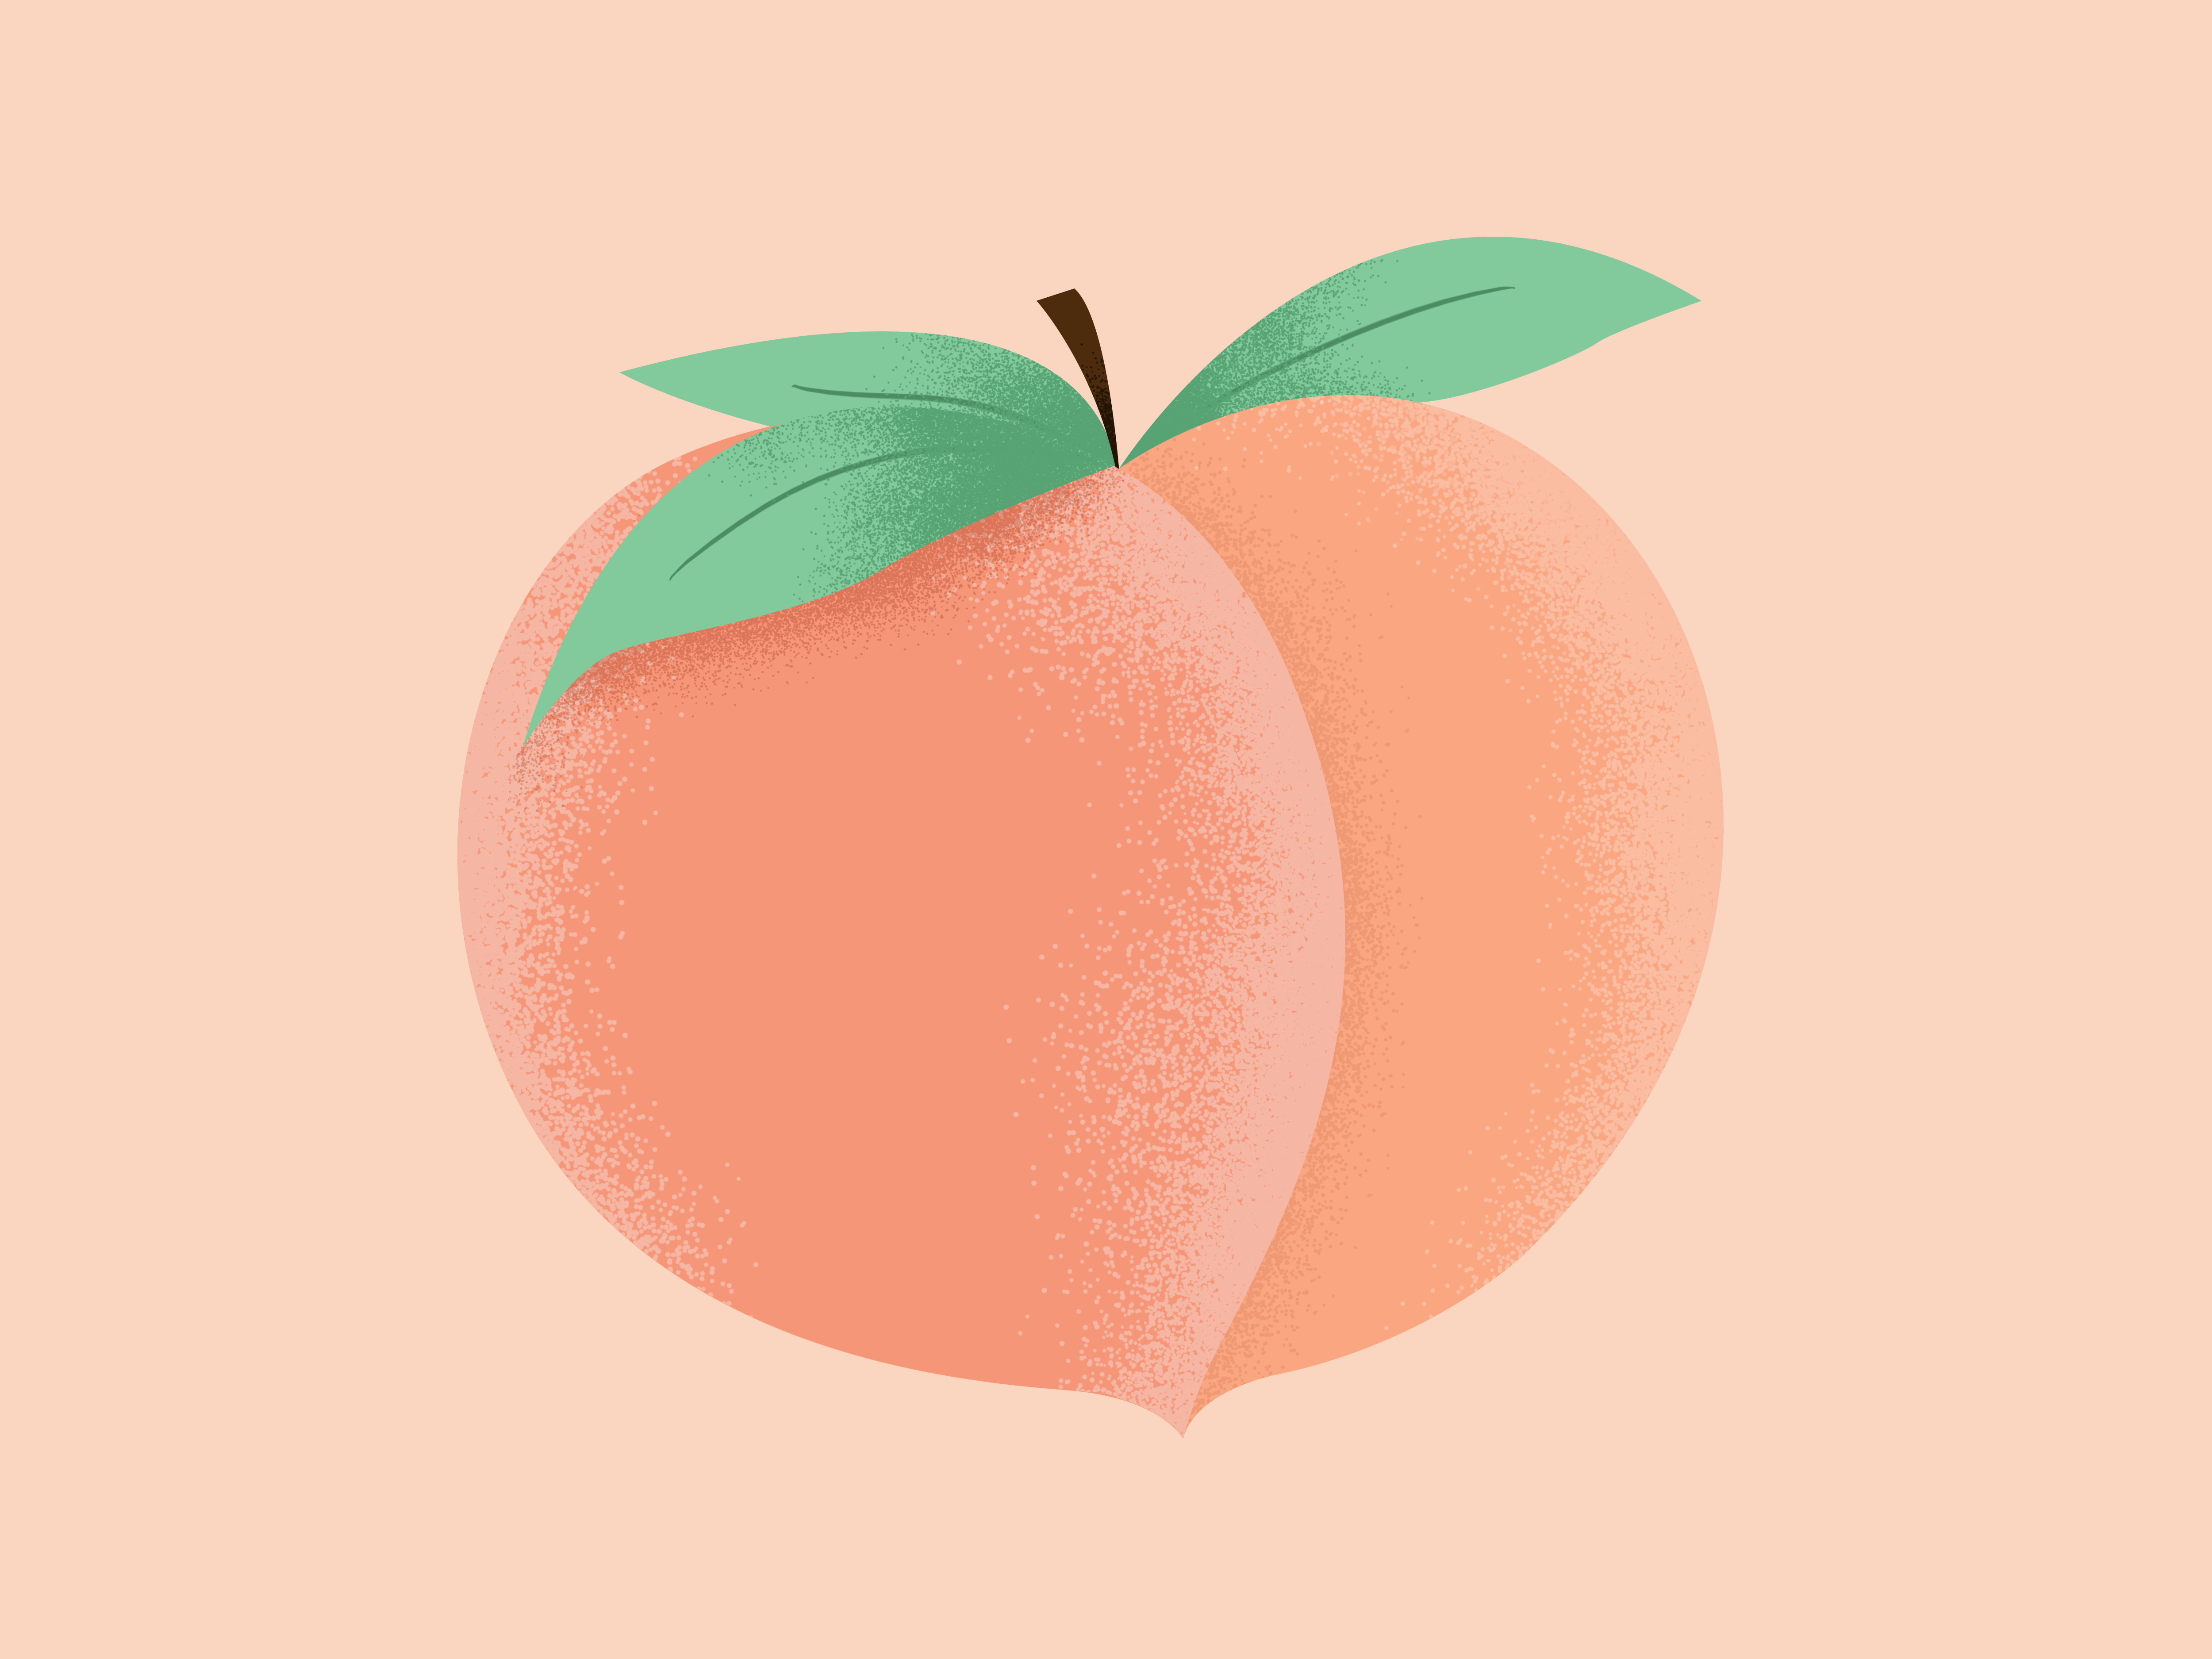 Персик форма половых губ у девушек. Персики мультяшные. Персик рисунок. Милый персик. Стилизованный персик.